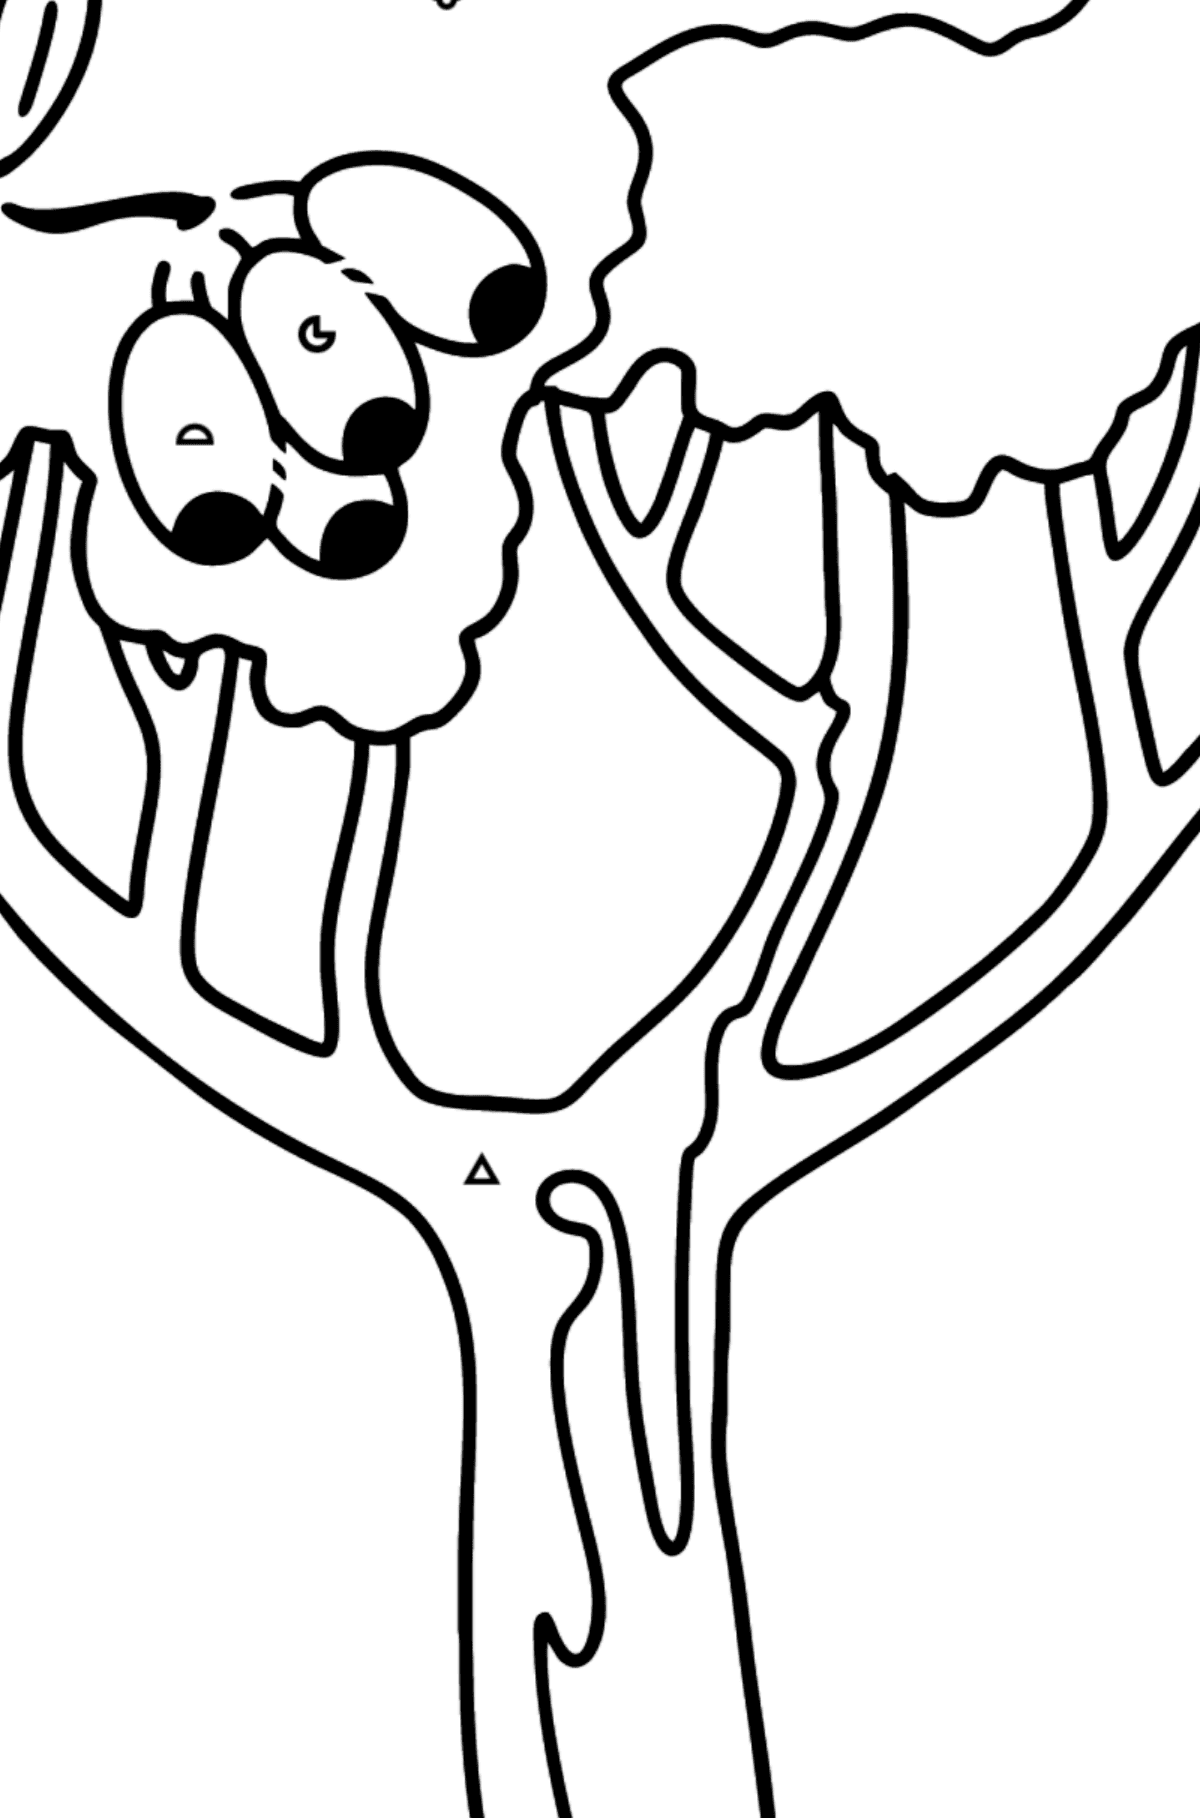 Mewarnai gambar pohon karet - Corimbia - Pewarnaan mengikuti Simbol dan Bentuk Geometri untuk anak-anak